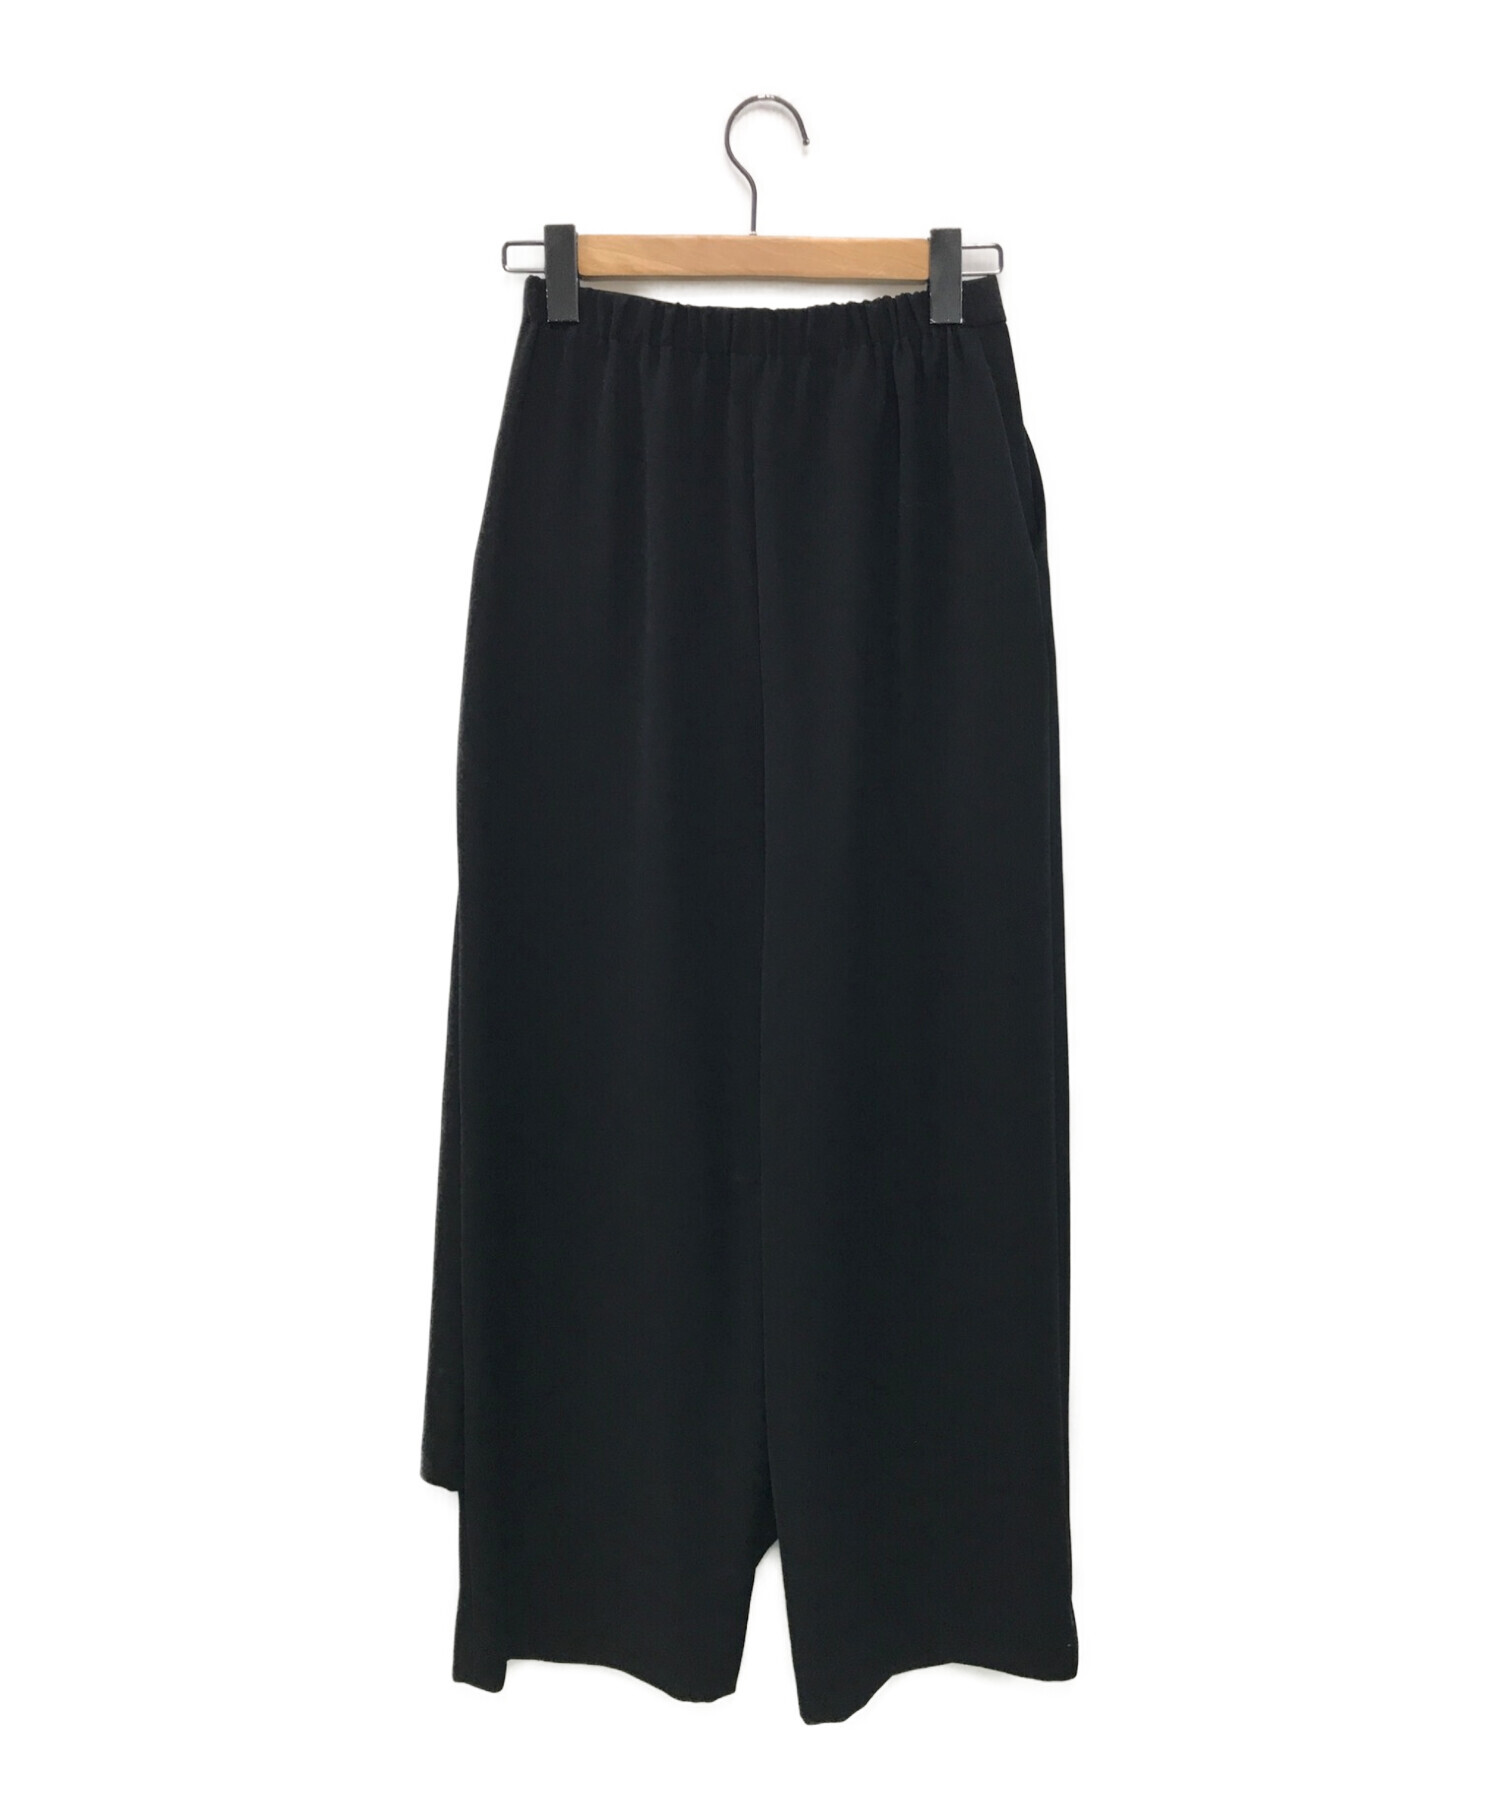 ENFOLD (エンフォルド) ダブルサテンBOXスカートパンツ ブラック サイズ:36